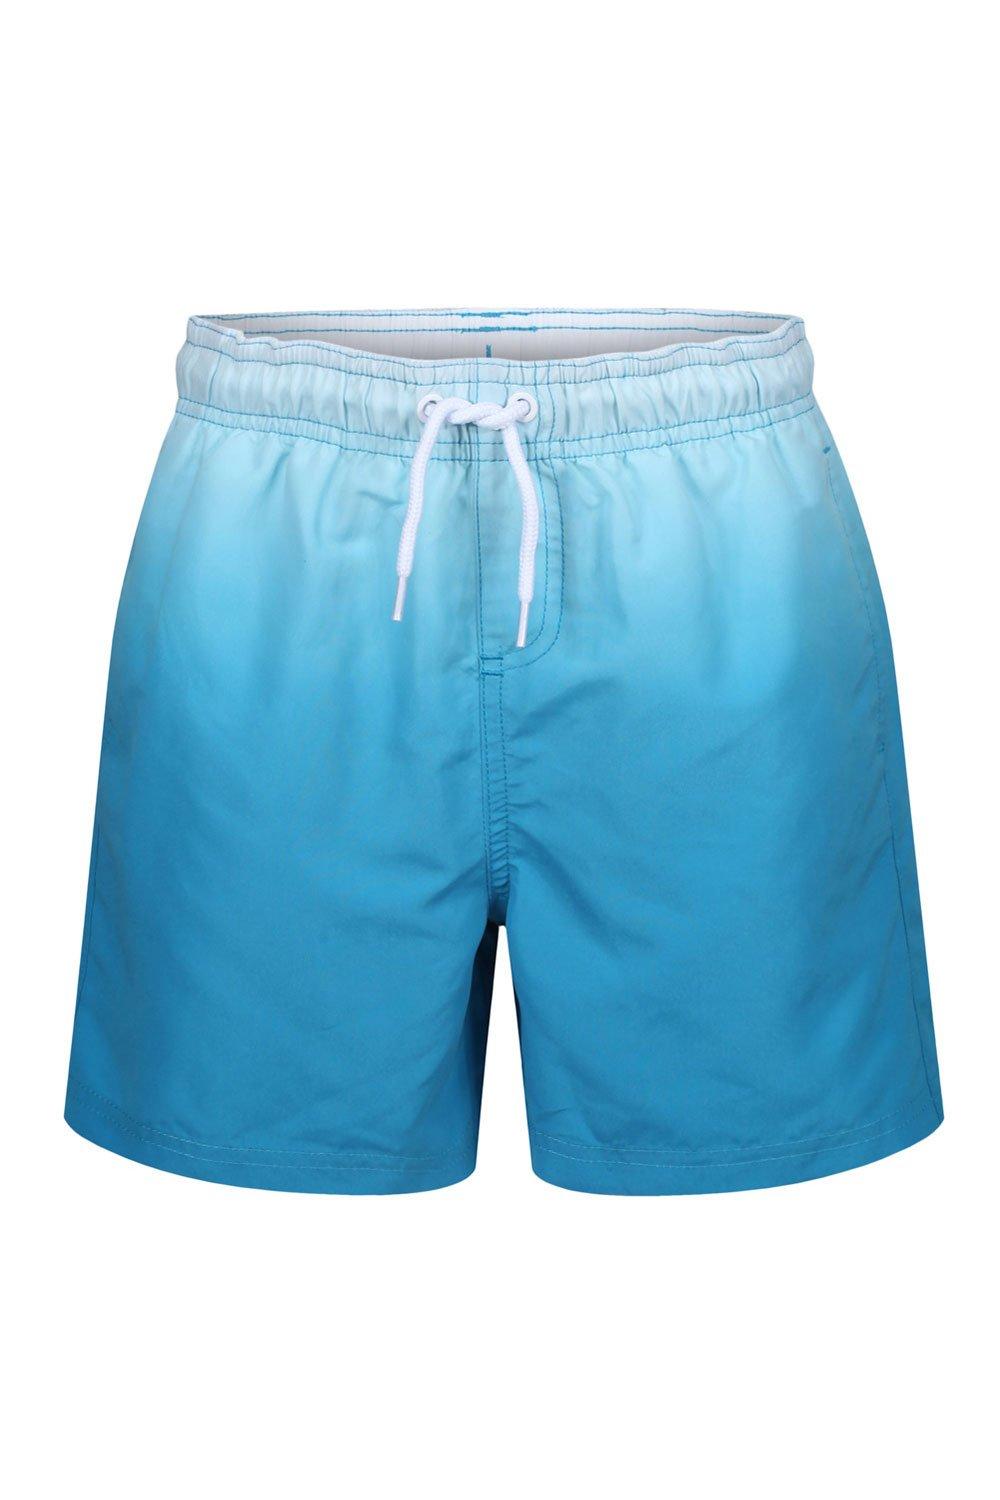 Шорты для плавания Dip Dye с эффектом омбре RIPT Essentials, синий шорты для плавания boss dolphin swim shorts цвет race car red